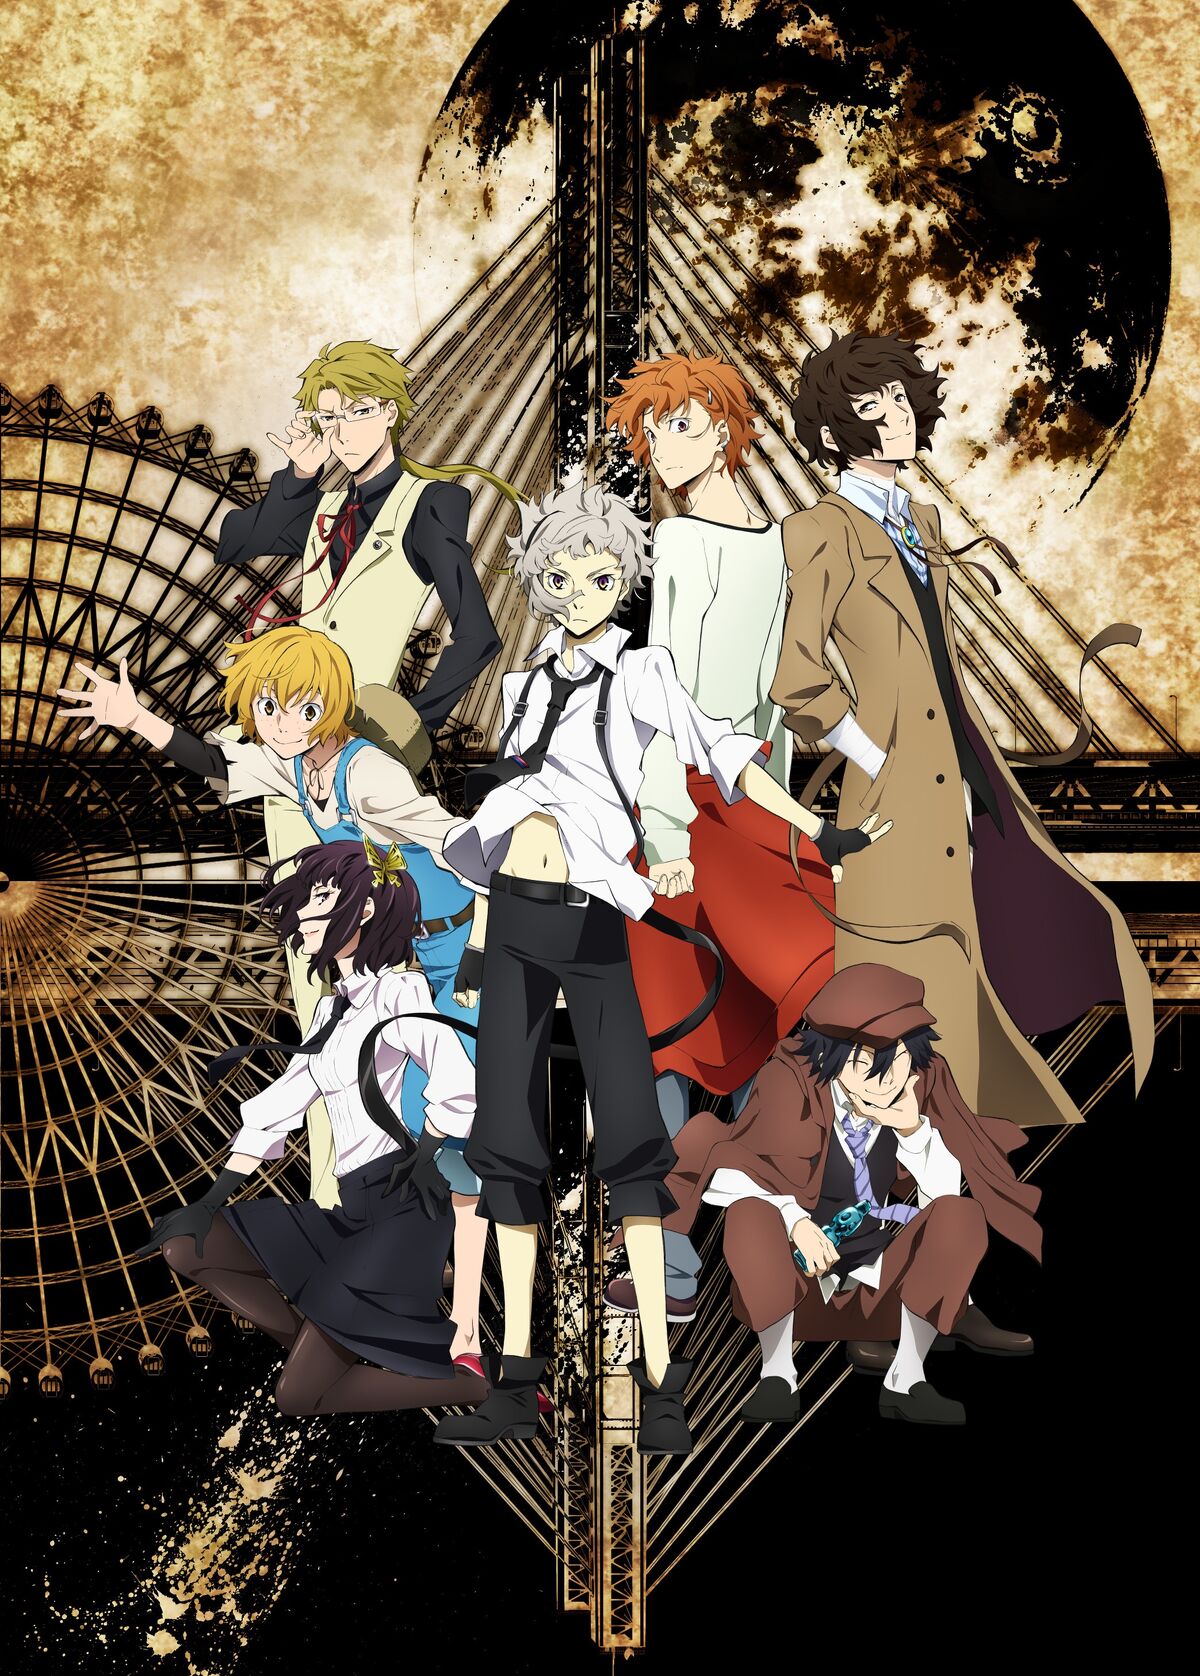 Tower of God Anime Gets 2nd Season - News - Anime News Network